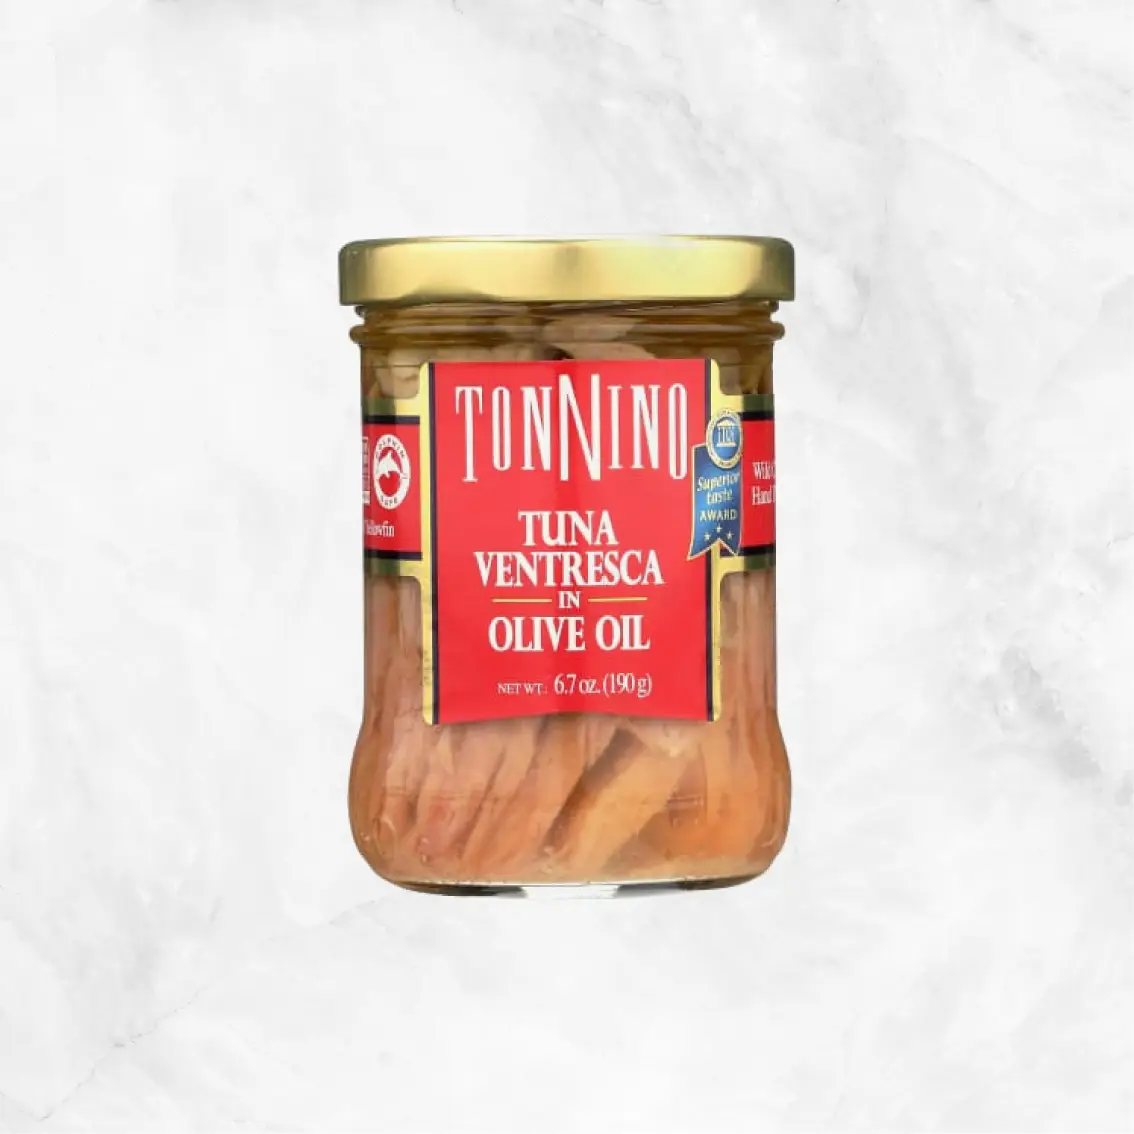 Tonnino Tuna Ventresca in Olive Oil